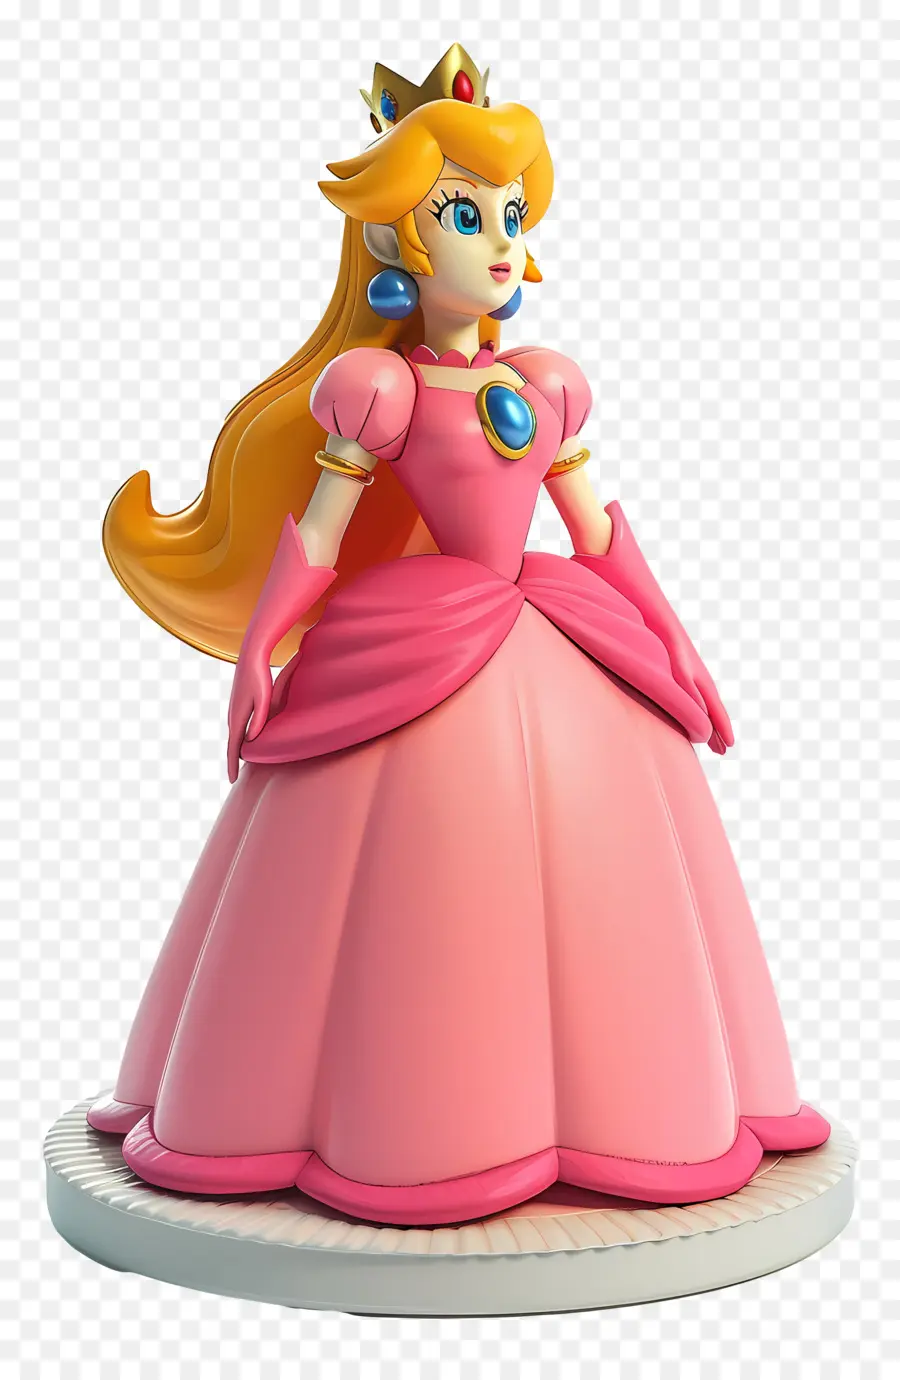 Prinzessin Peach - Statue von Disney Princess Peach in Pink